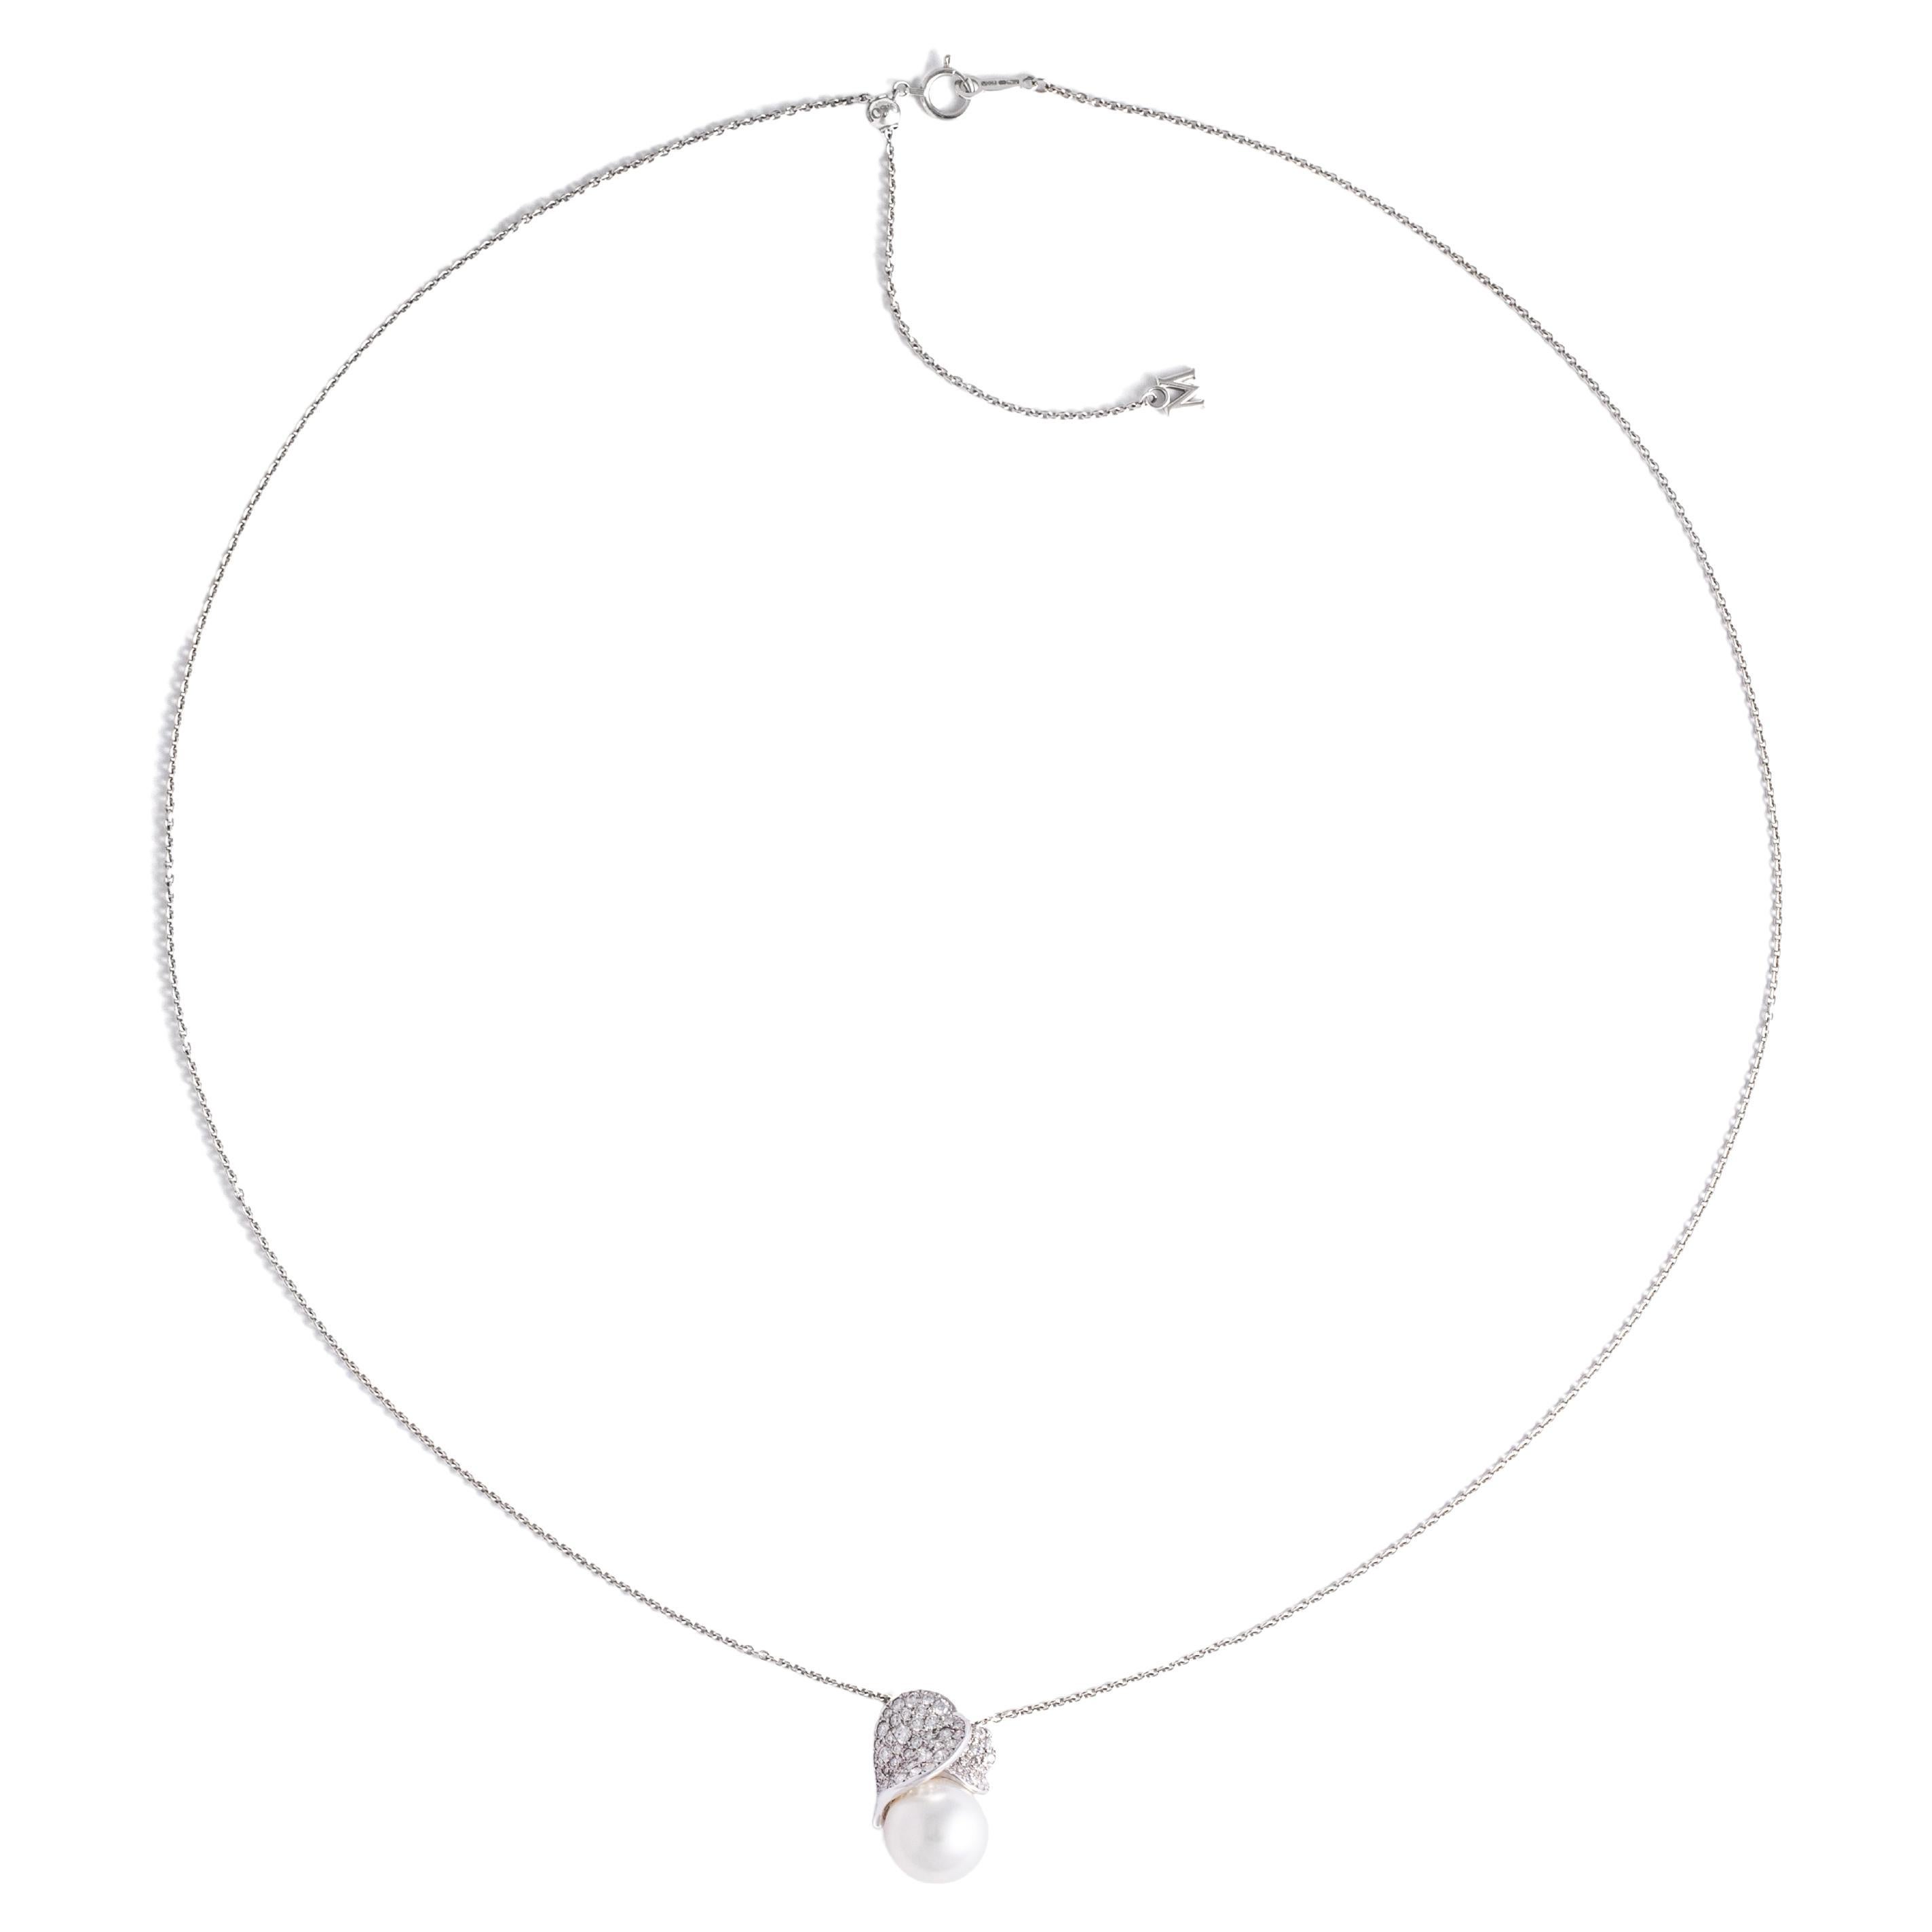 Pendentif en or blanc Mikimoto 18K avec perles de culture des mers du Sud
Pendentif en perles de culture blanches des mers du Sud : 11,50 x 12 mm. 
Diamant : 0,70 carat.
Signée Mikimoto et numérotée.
Boîte et certificat d'origine.
Vers 2021.
Poids